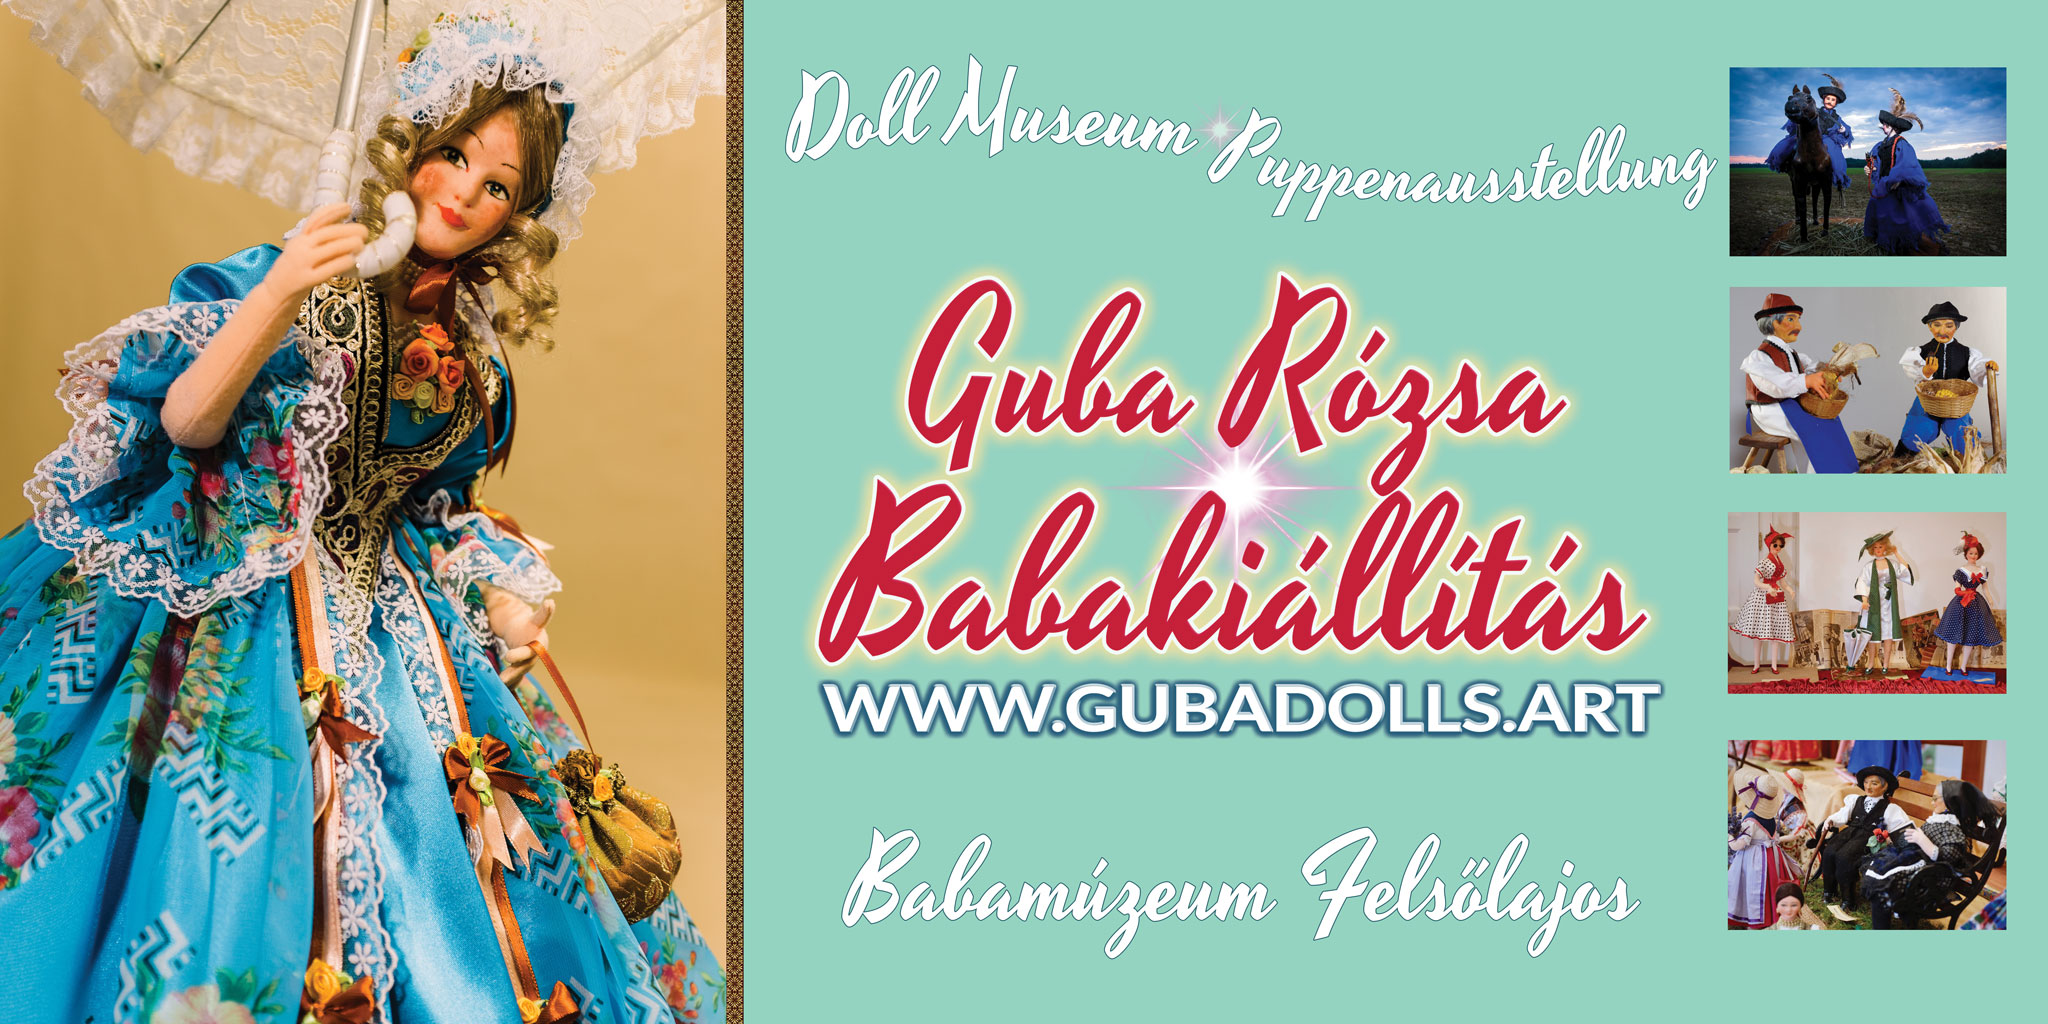 Guba Rózsa Karácsonyi Babakiállítás Felsőlajoson